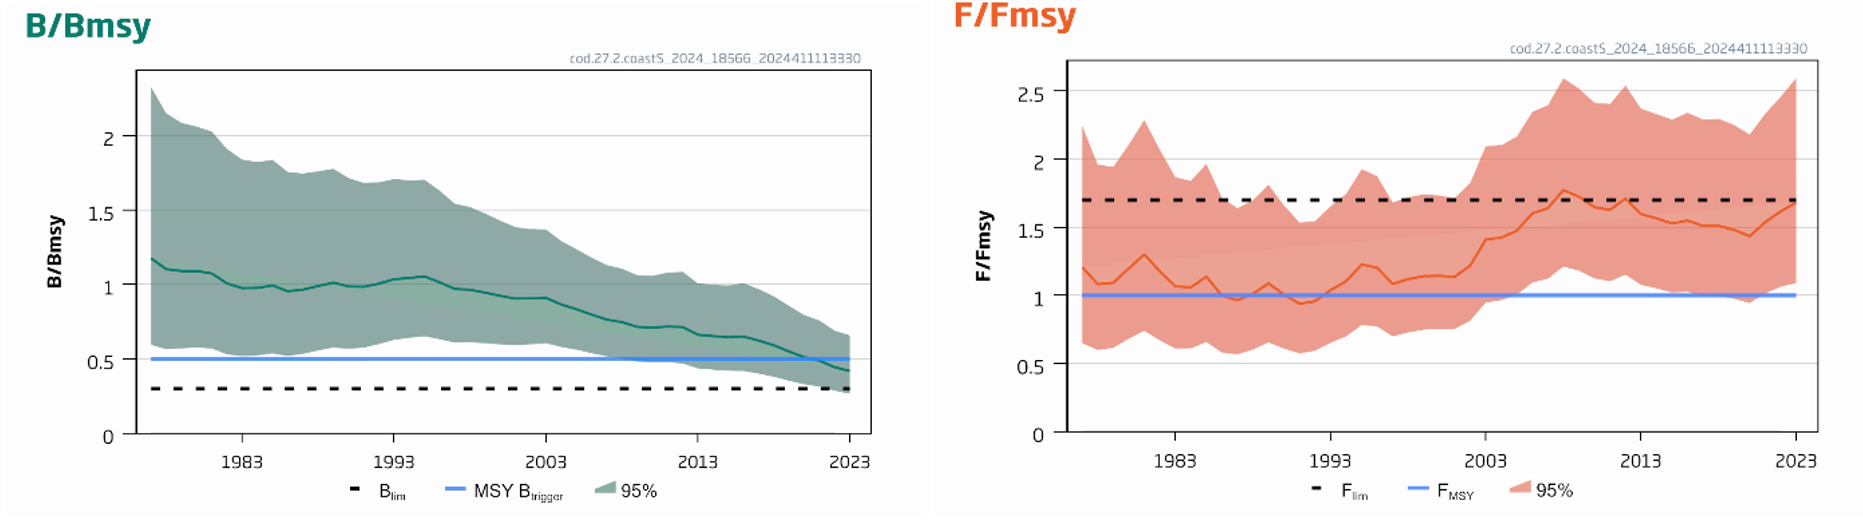 2 grafer som viser utvikling av B/Bmsy og F/Fmsy fra 1970-tallet til 2023